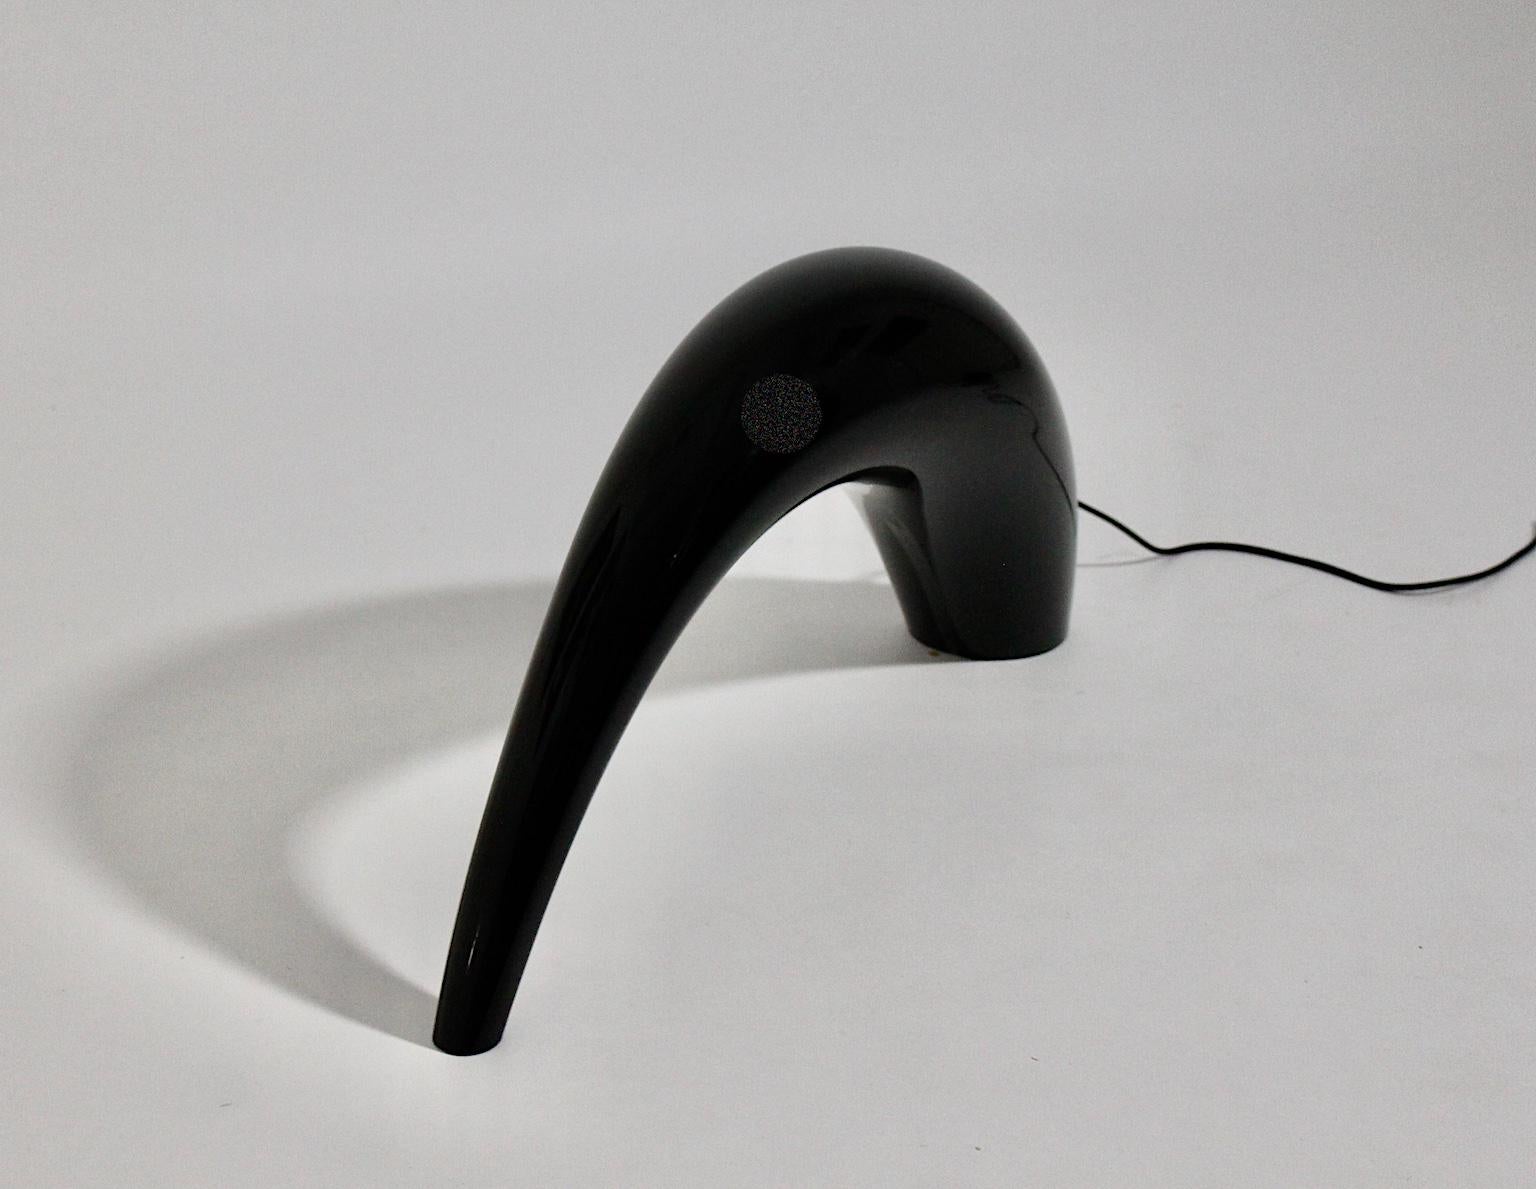 Une lampe de table moderne en verre noir vintage conçue et réalisée par Lino Tagliapietra pour La Murrina, Murano Italie 1972, qui présente un corps en verre incurvé à parois épaisses.
Cette pièce de design de haute qualité a été créée par le